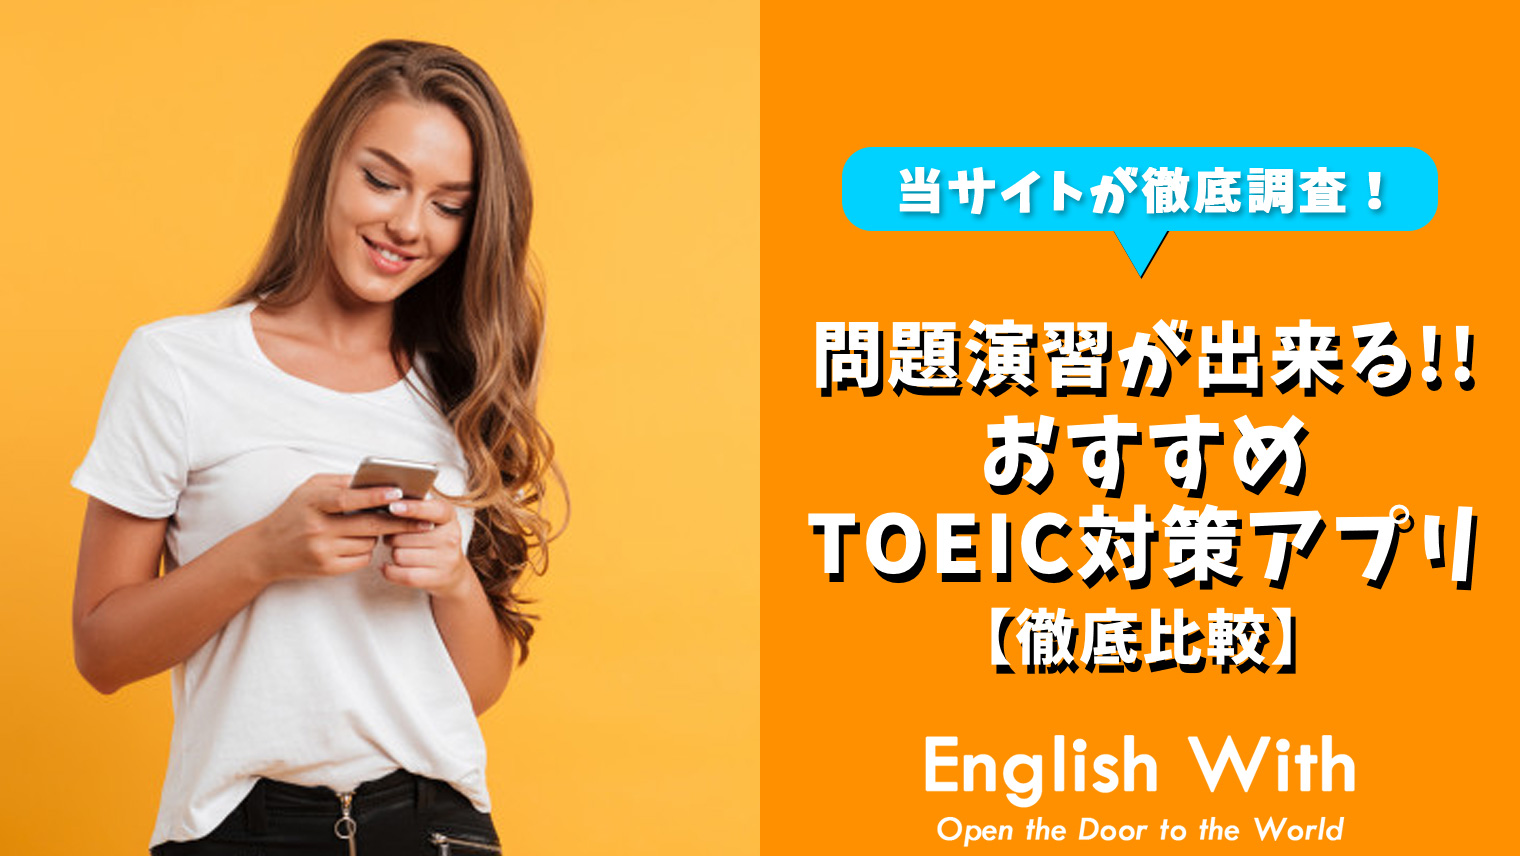 Toeic問題演習に使える おすすめ英語学習アプリを紹介 8選 おすすめ英会話 英語学習の比較 ランキング English With